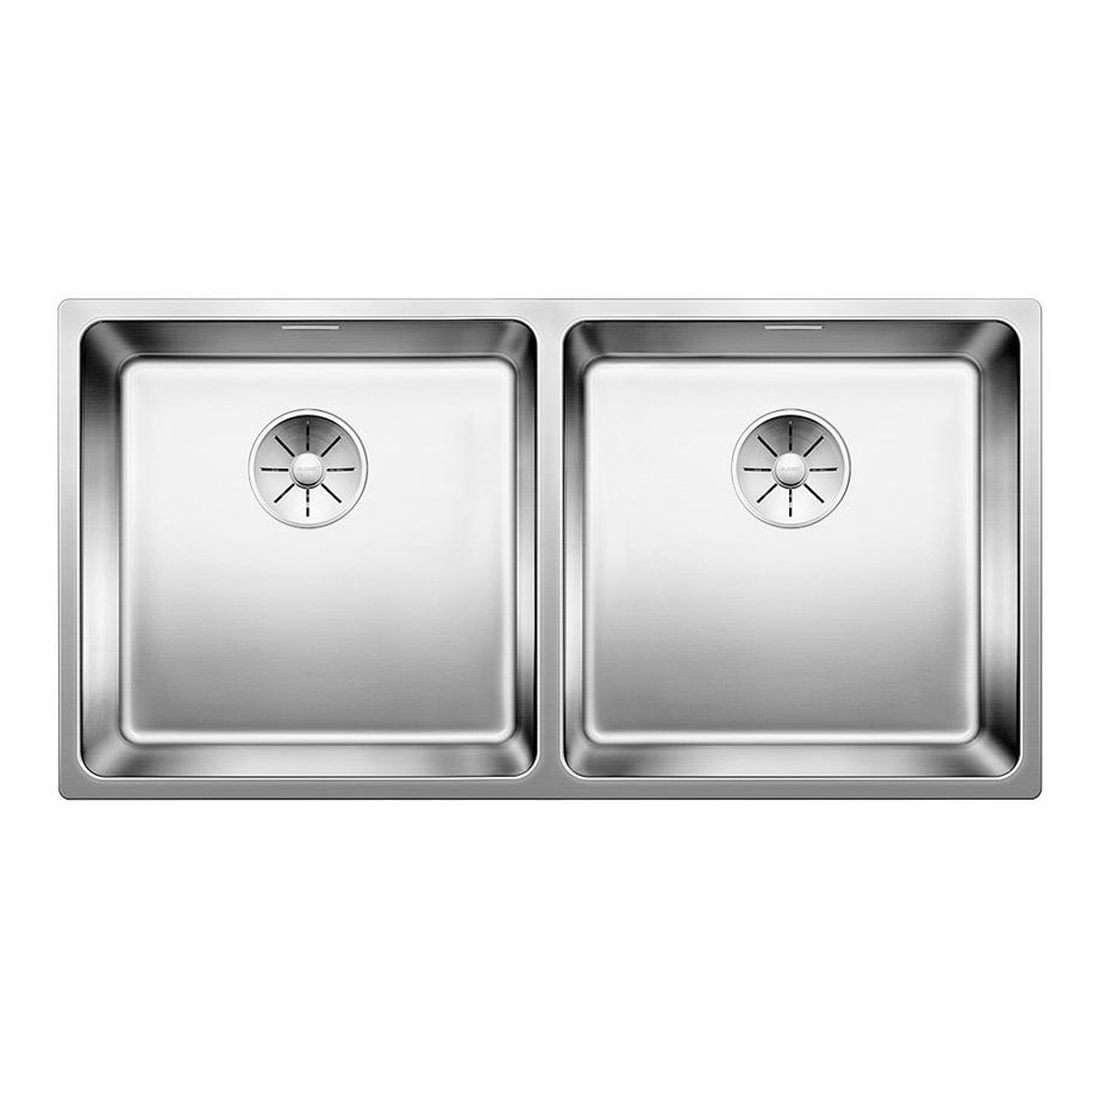 Кухонная мойка Blanco Andano 400/400-IF полированная сталь кухонная мойка franke 122 0689 805 нержавеющая сталь